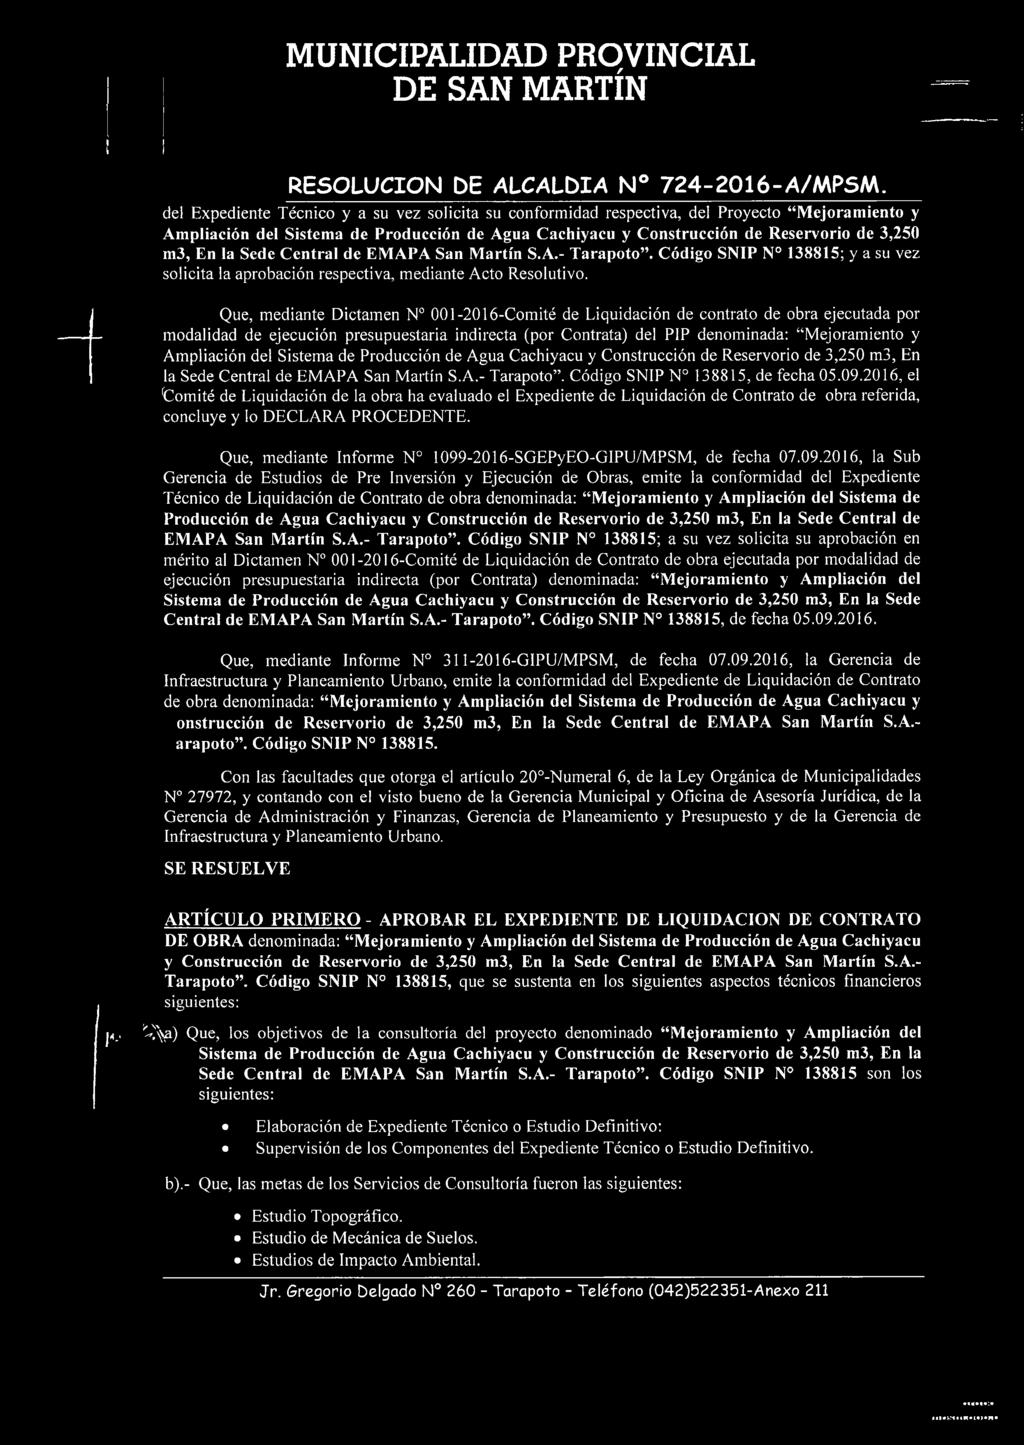 la Sede Central de EMAPA San Martín S.A.- Tarapoto. Código SNIP N 138815; y a su vez solicita la aprobación respectiva, mediante Acto Resolutivo.